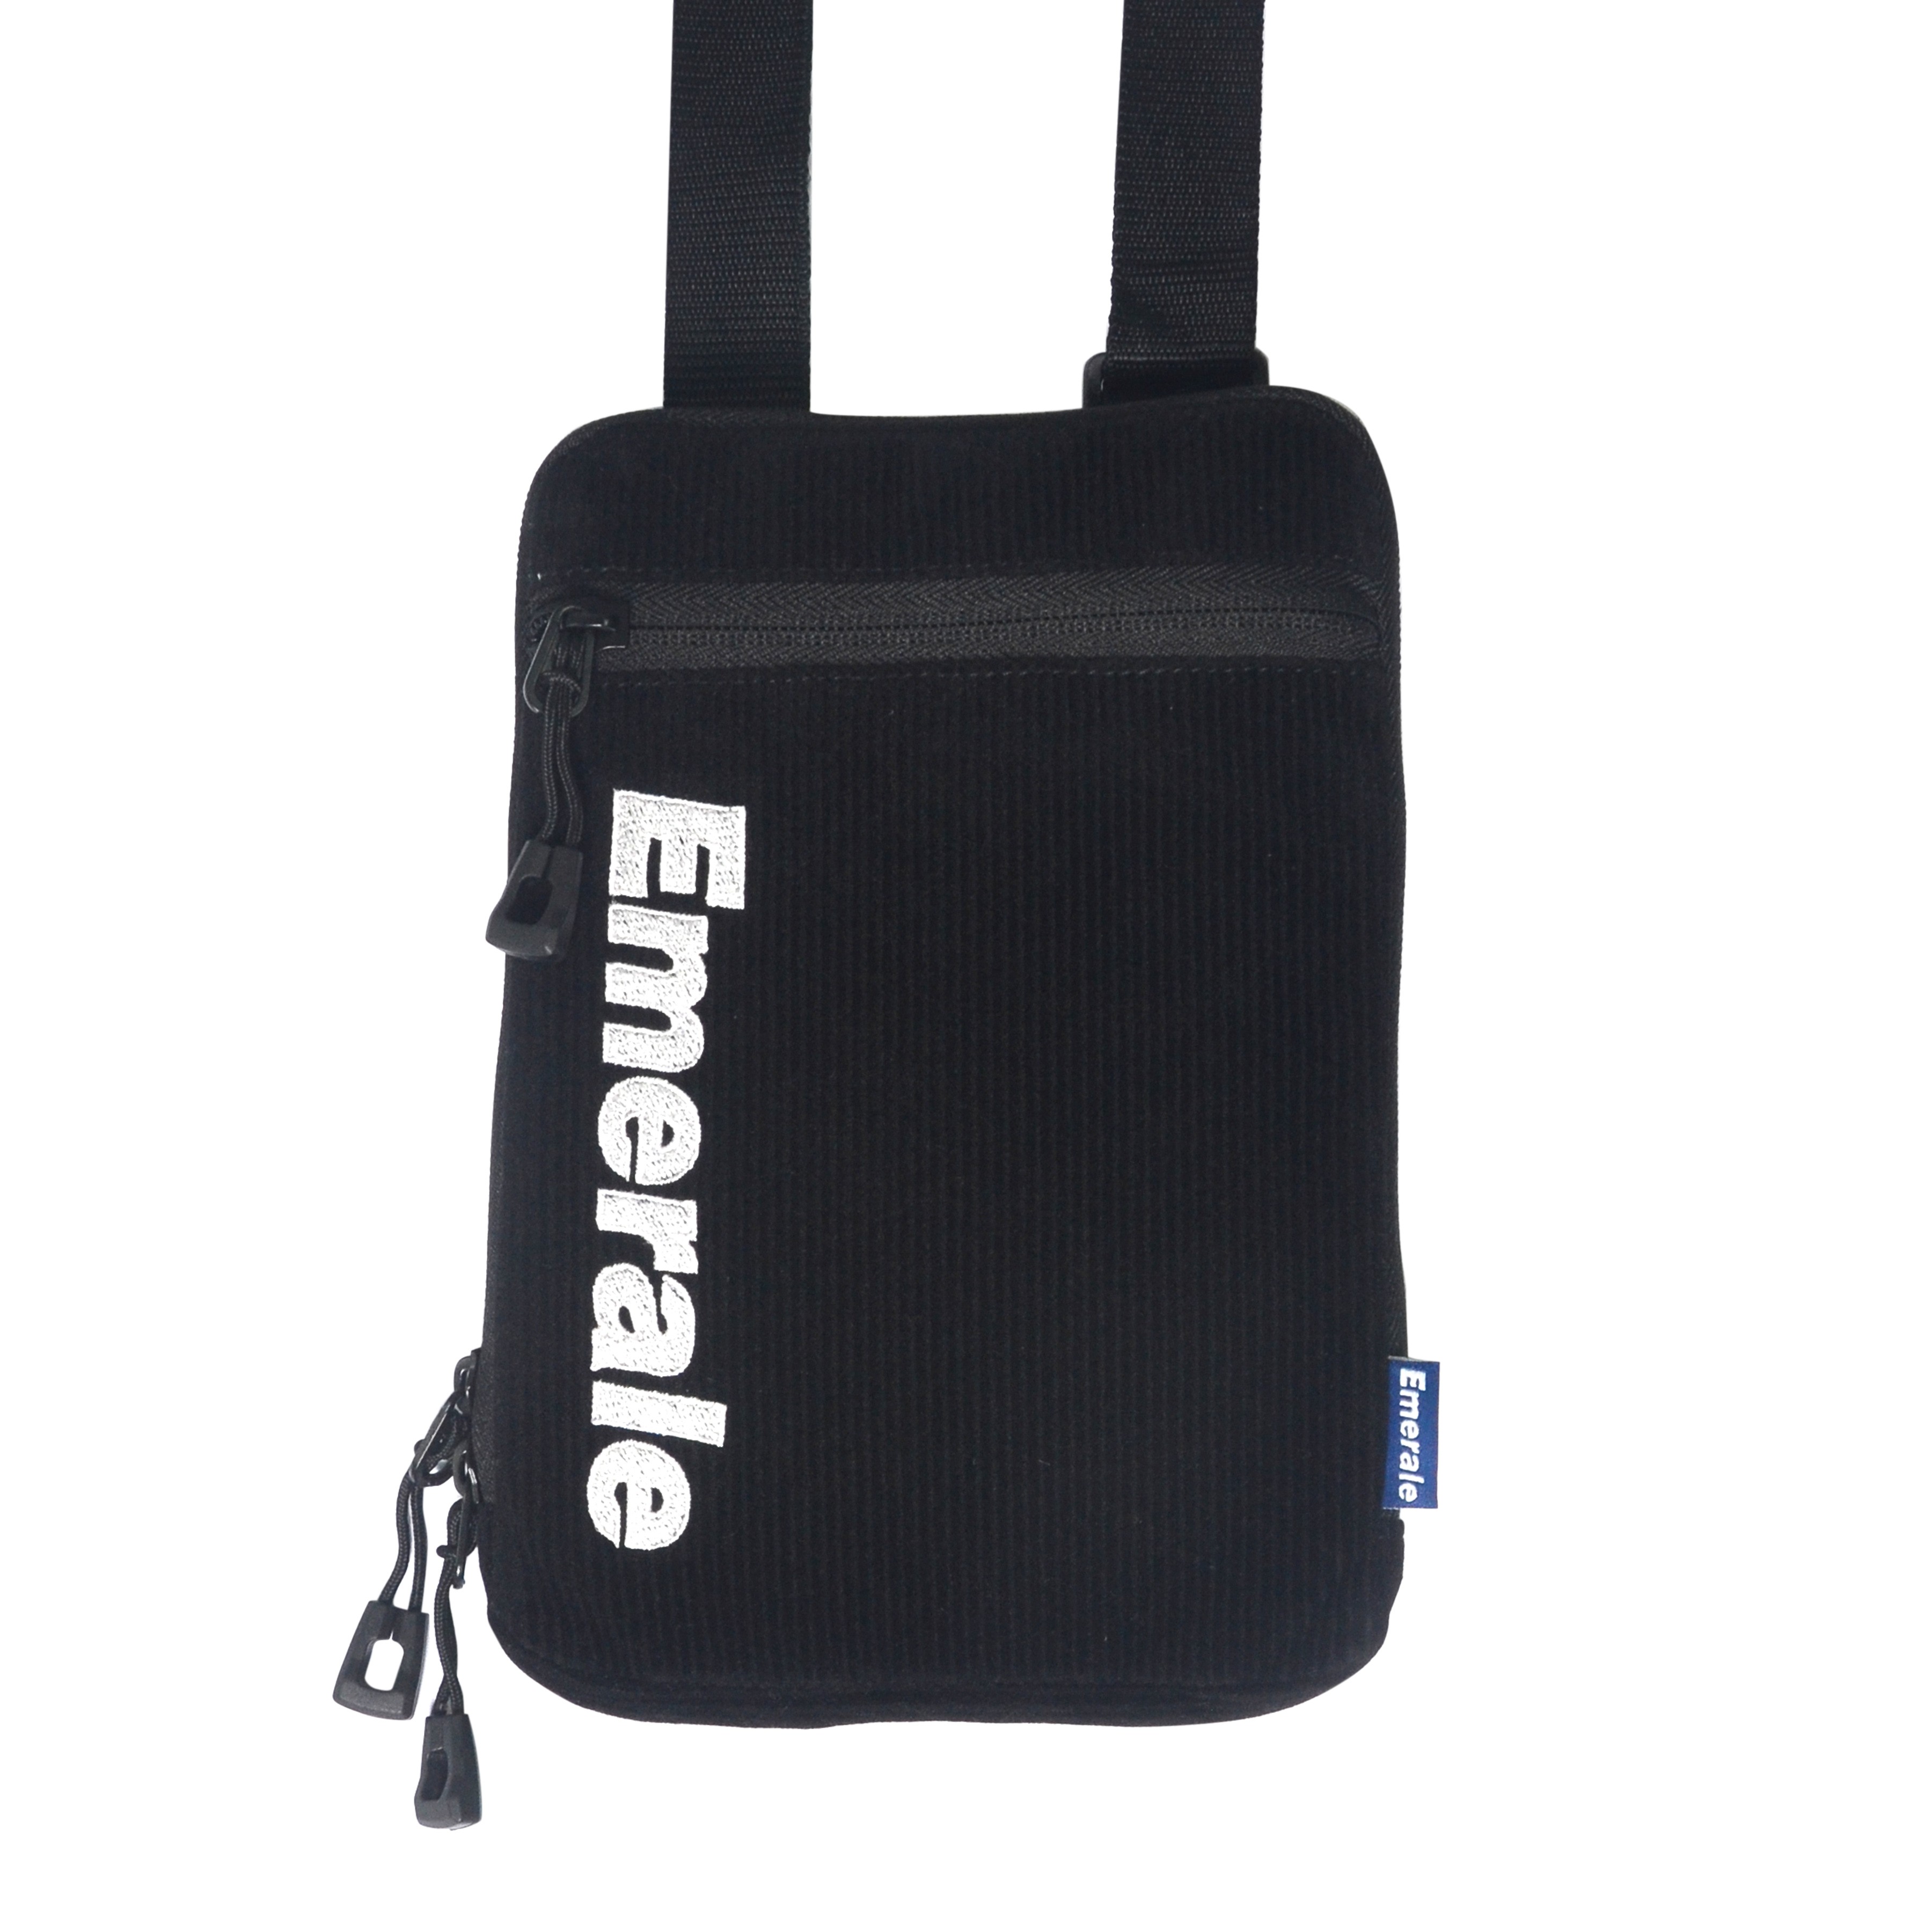 Product - SHOULDER BAG CORDUROY BLACK | EMERALE